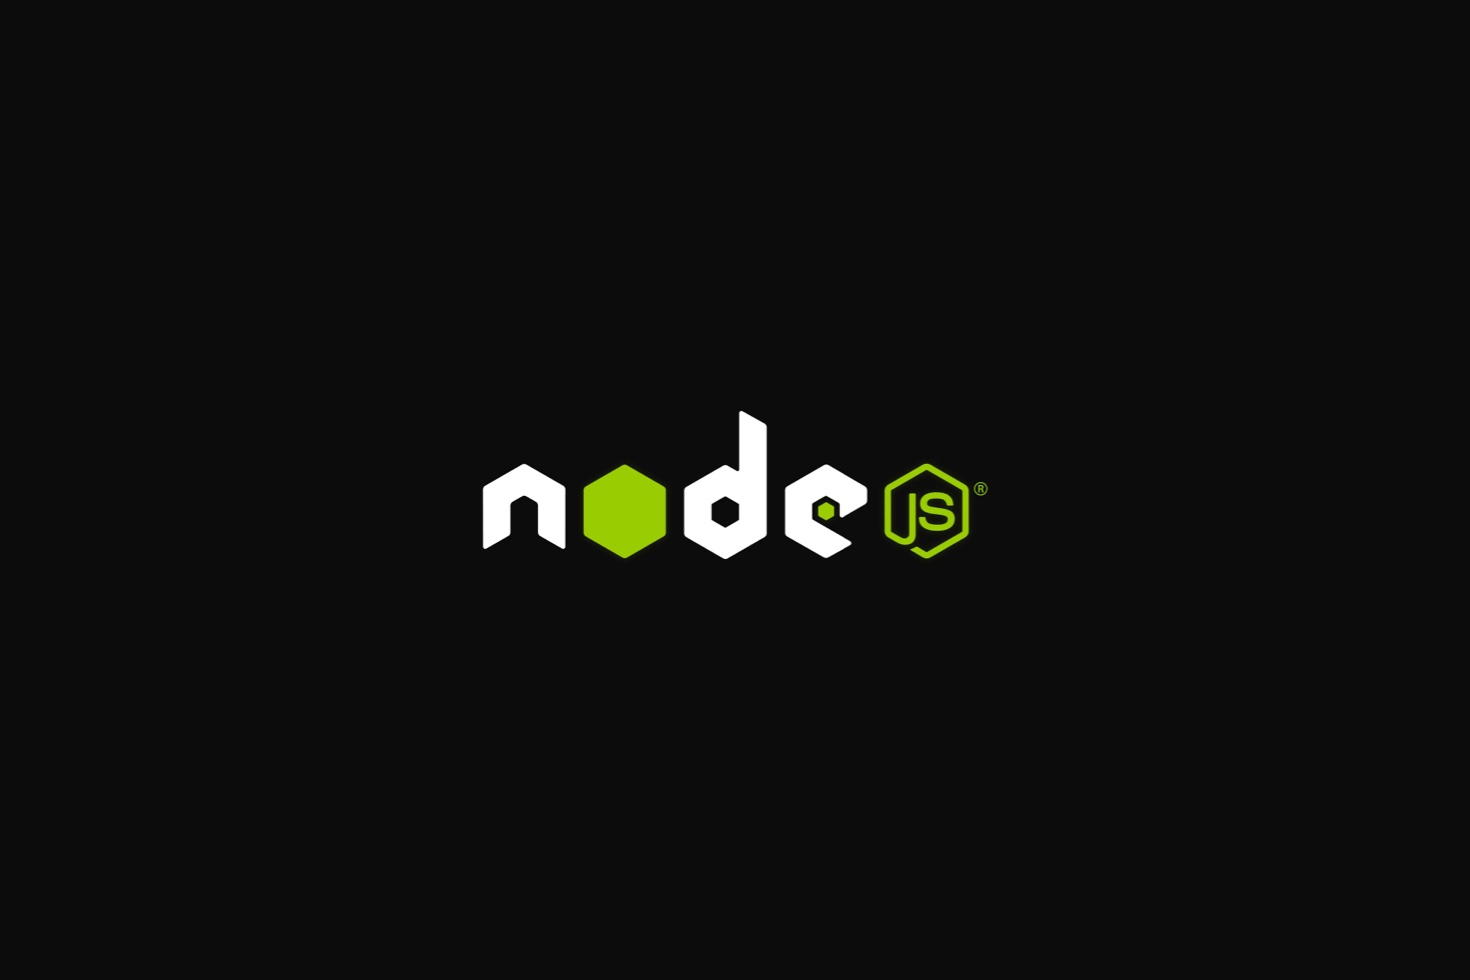 Node.js wallpaper download